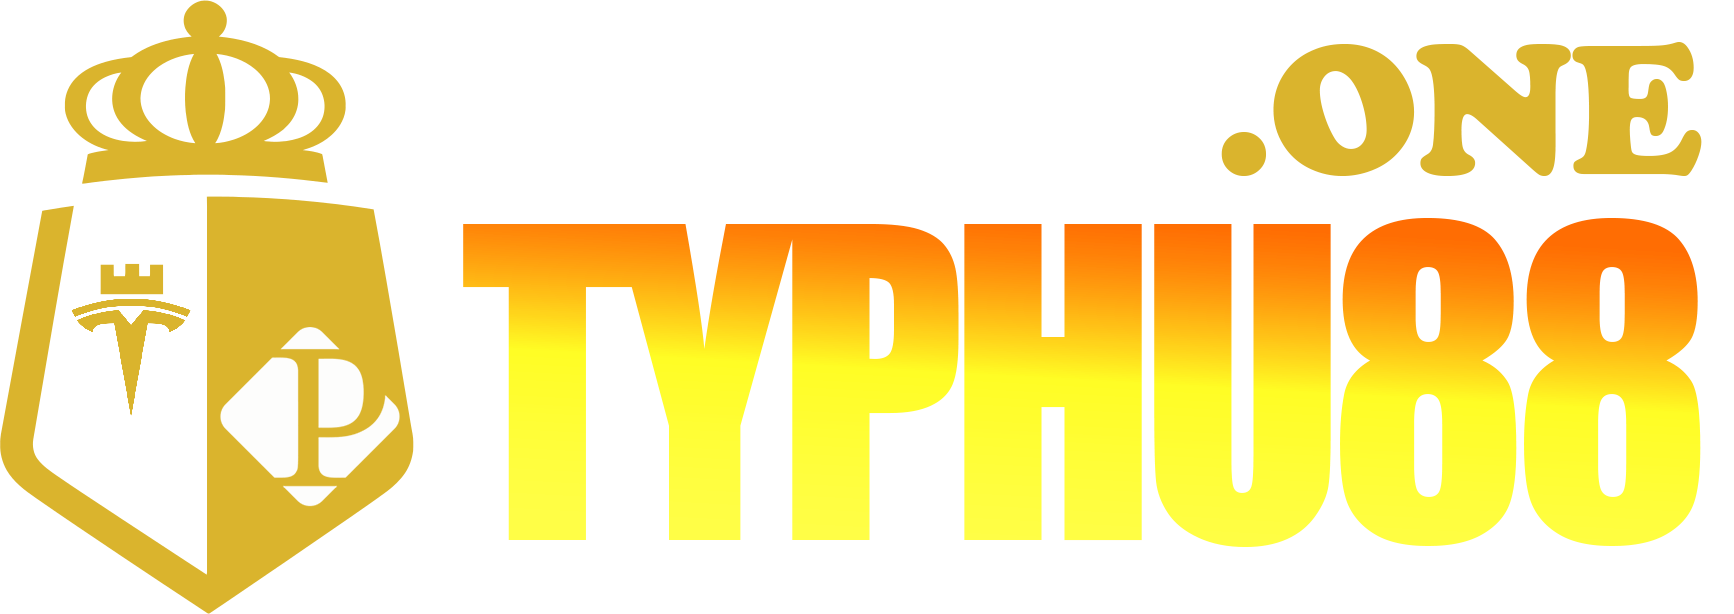 Typhu88 – Đường link chính thức nhà cái Tỷ phú 88 và Typhu88.one